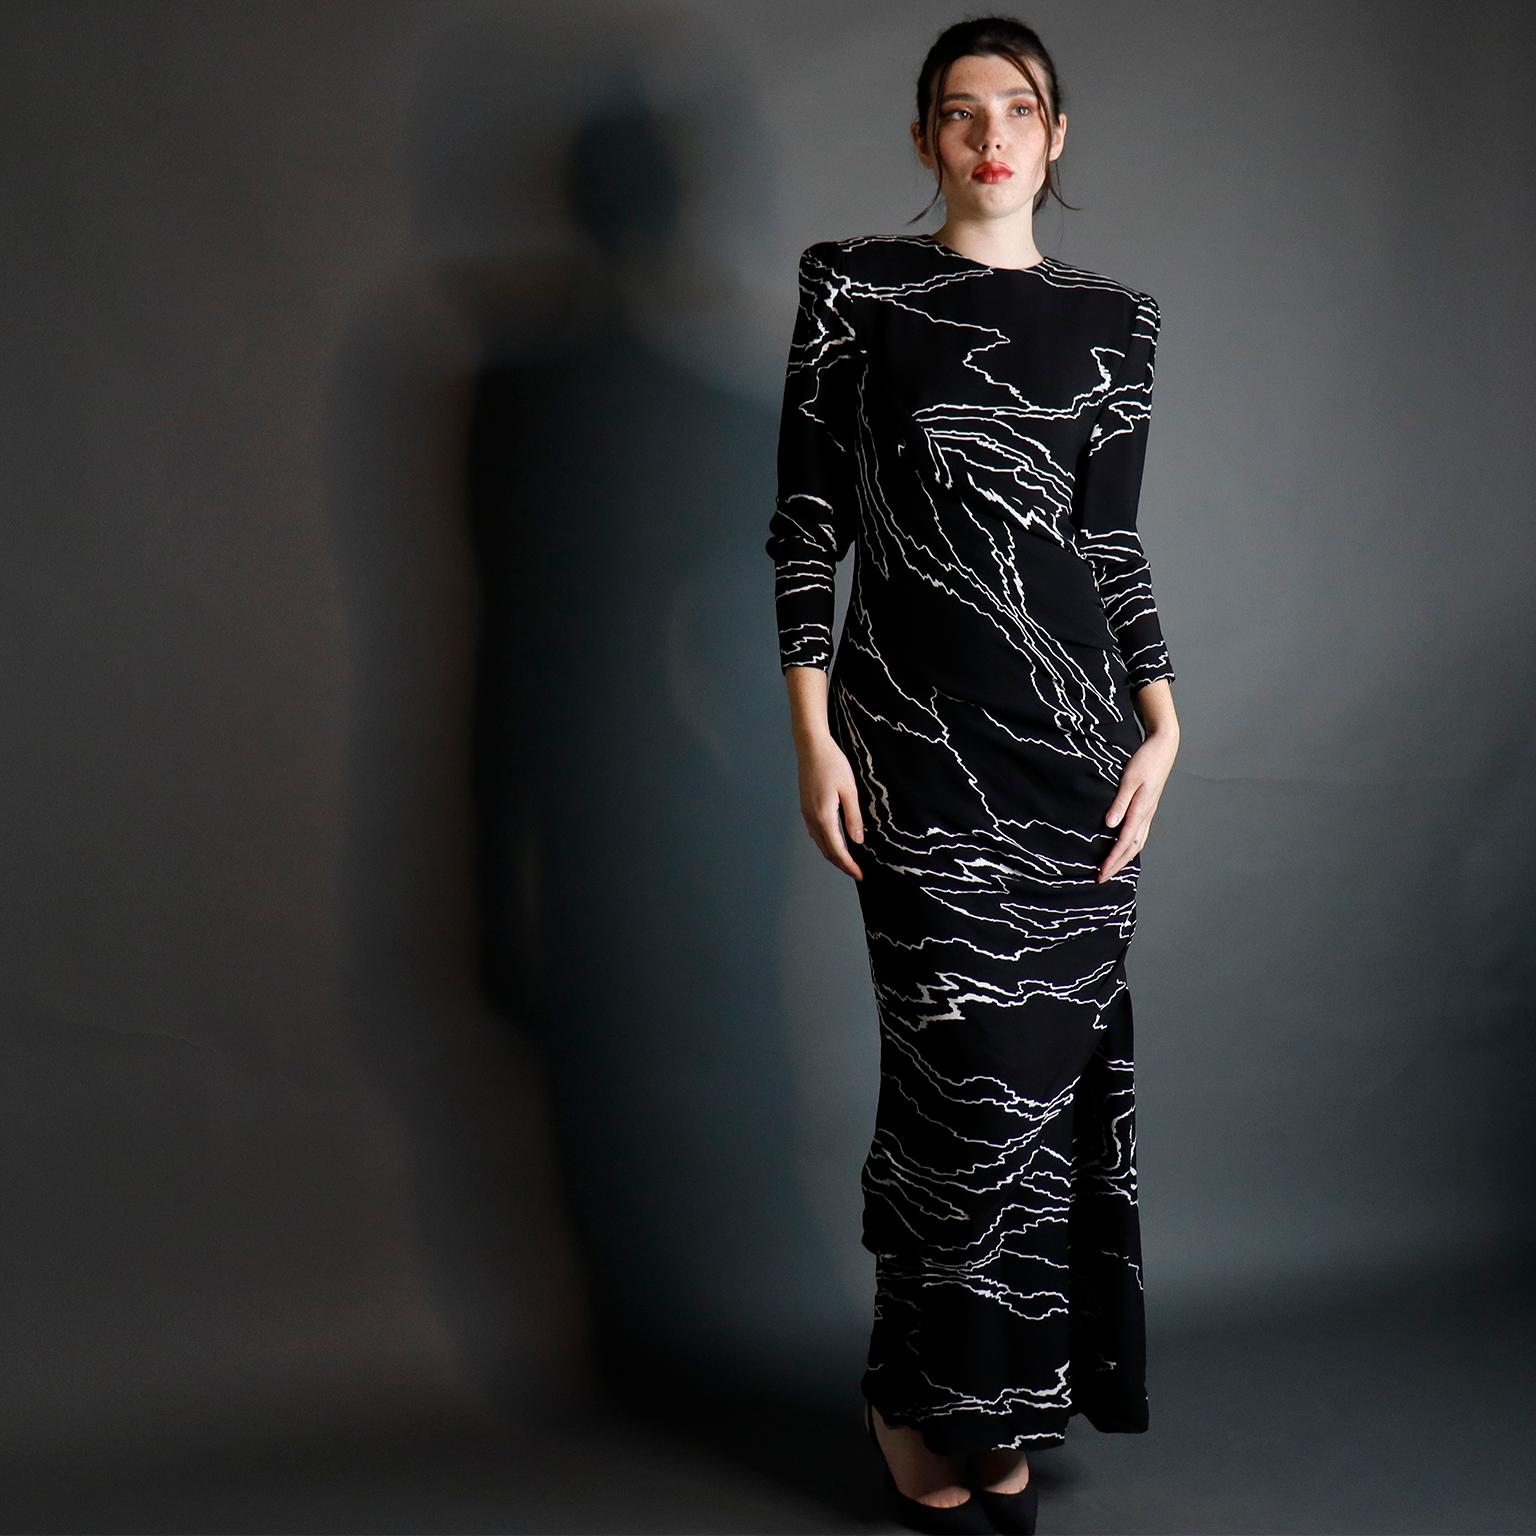 Cette élégante robe vintage du designer Bill Blass provient de sa collection de 1985 et nous la trouvons si fabuleuse !  La robe longue est ornée d'un superbe imprimé abstrait noir et blanc. Nous adorons les pièces vintage de Bill Blass et celle-ci